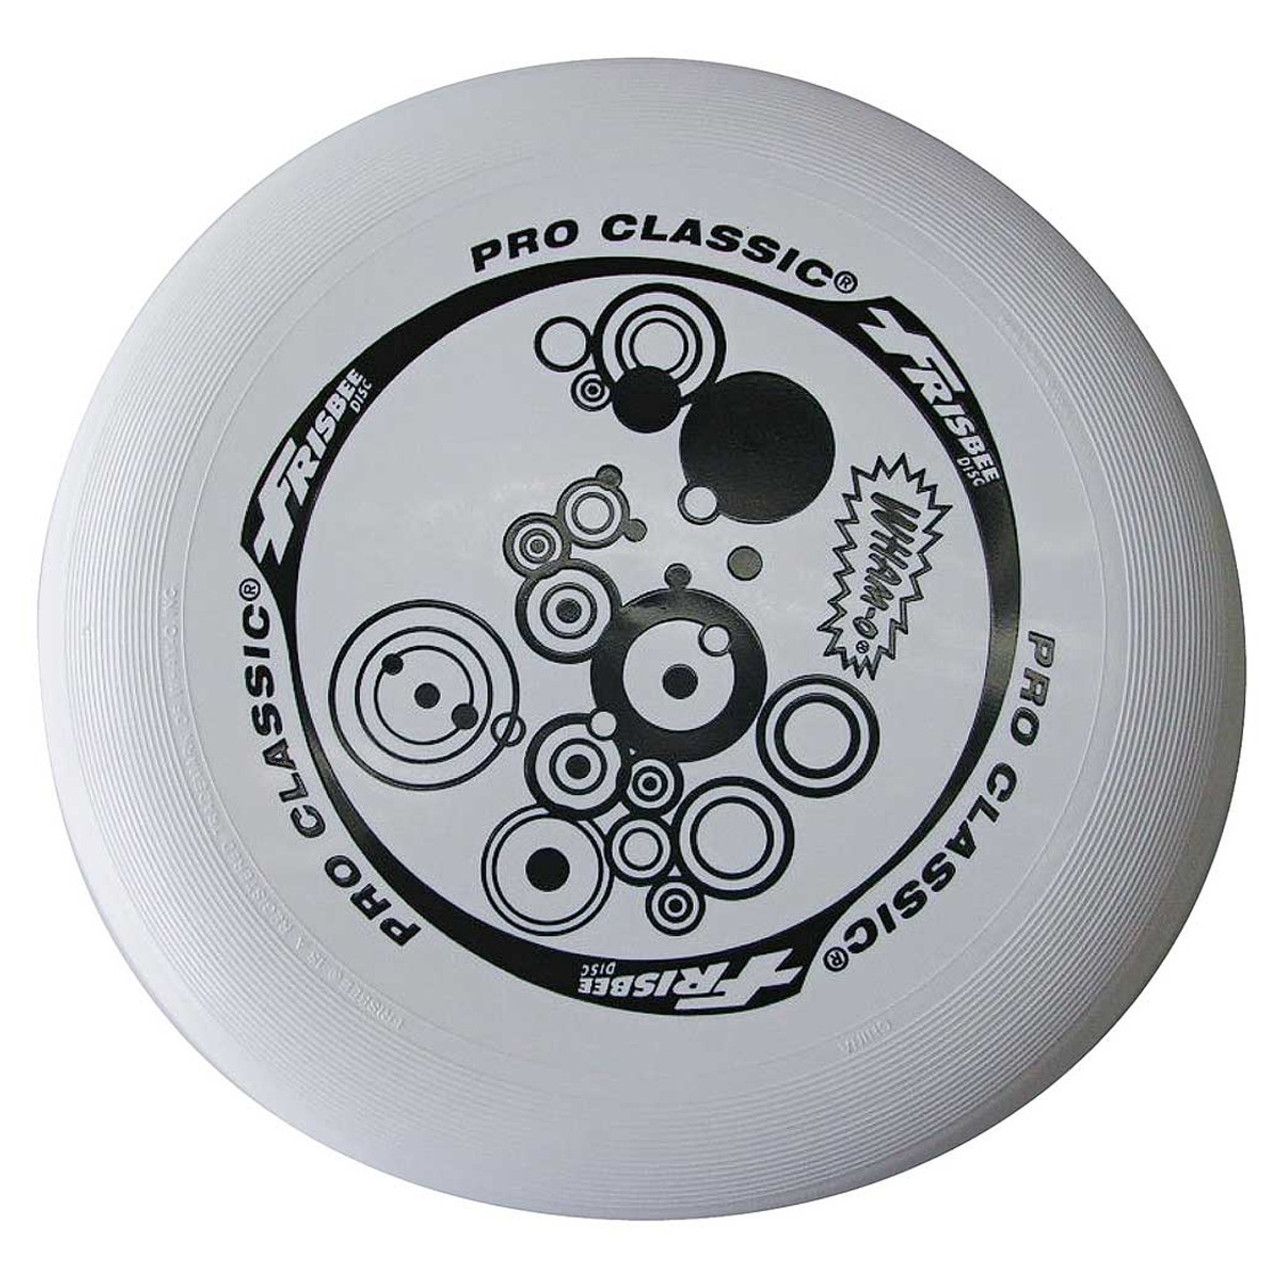 Pearly Grav impuls Wham-O Pro Classic Frisbee